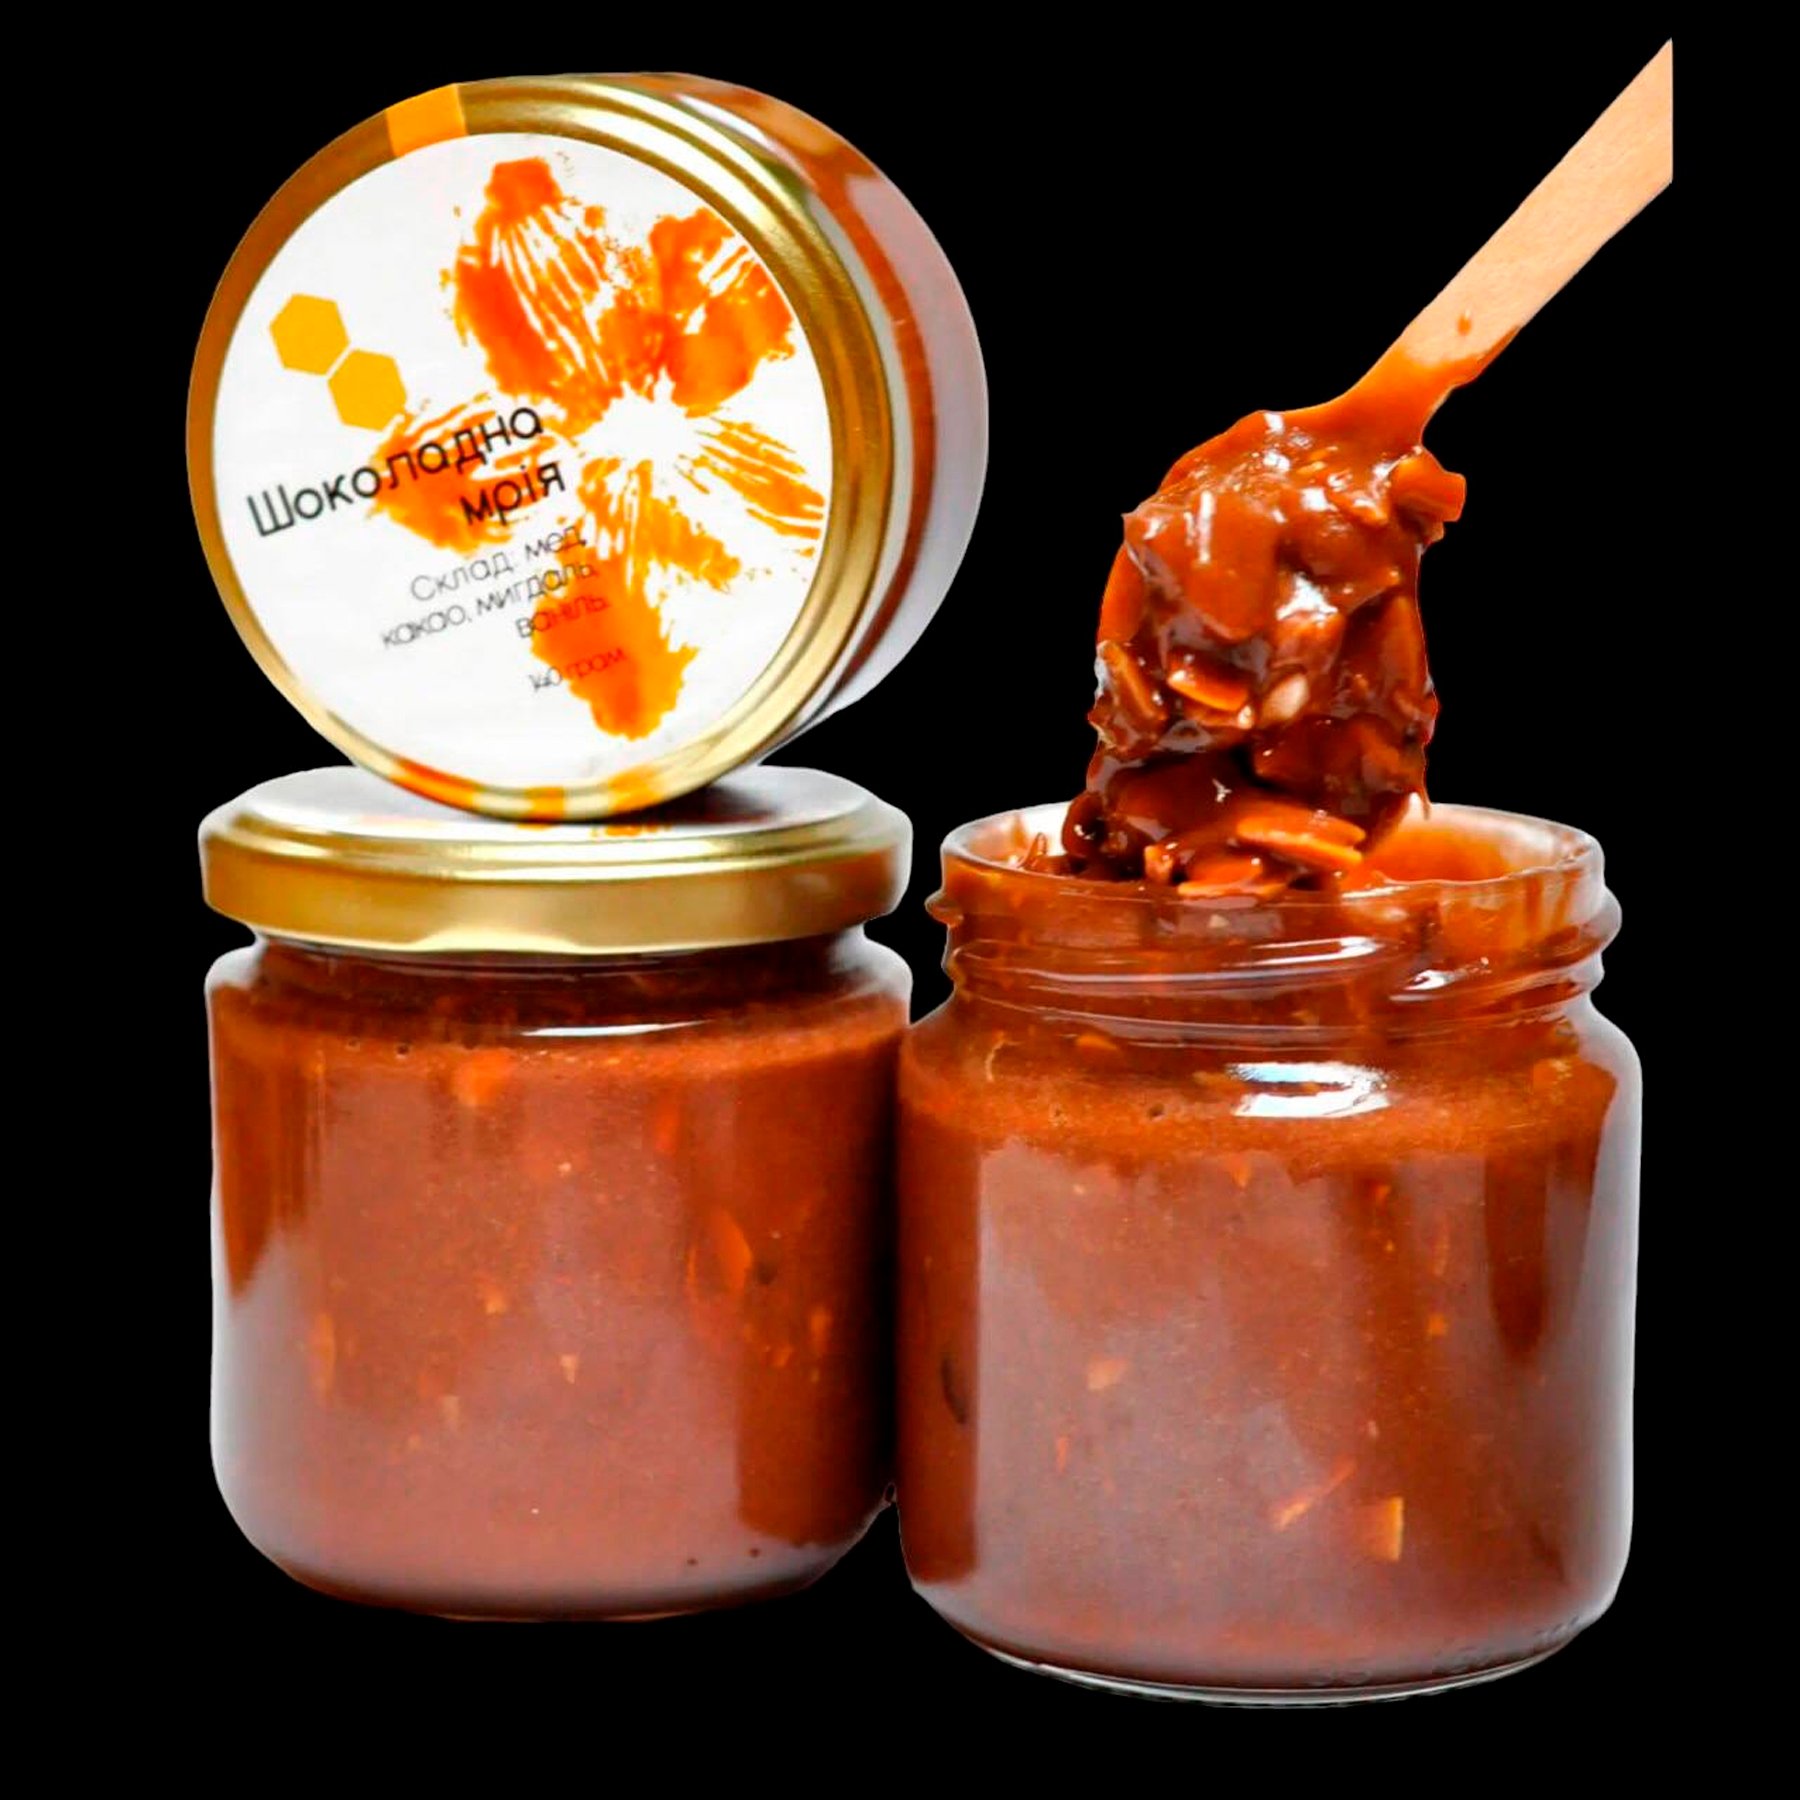 Медове варення “Шоколадна мрія” із какао, мигдалем та ванілью 260 г.